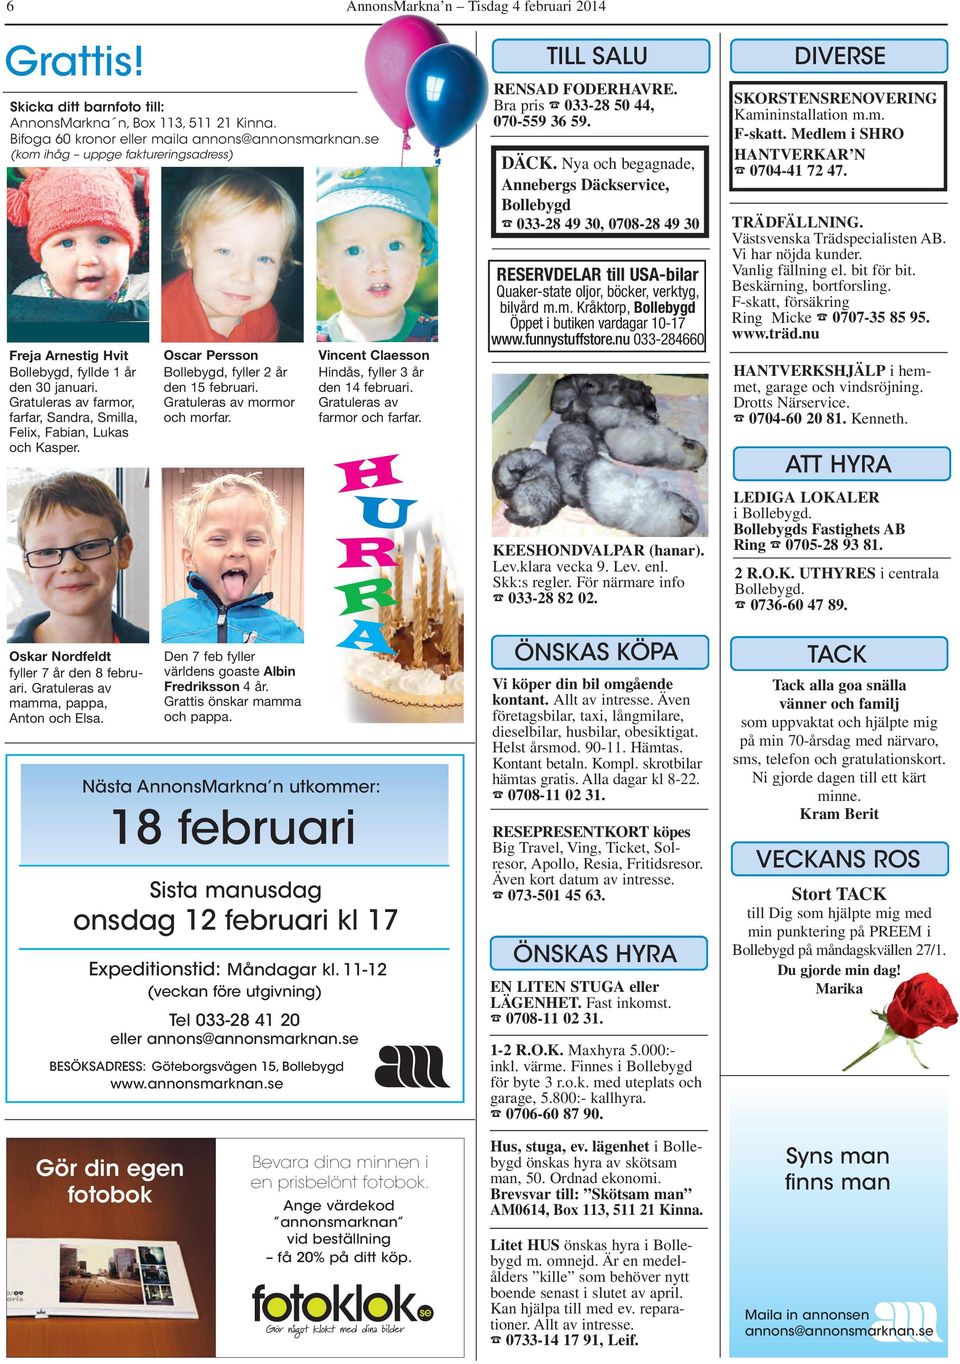 Oskar Nordfeldt fyller 7 år den 8 febru - ari. Gratuleras av mamma, pappa, Anton och Elsa. Oscar Persson Bollebygd, fyller 2 år den 15 februari. Gratuleras av mormor och morfar.